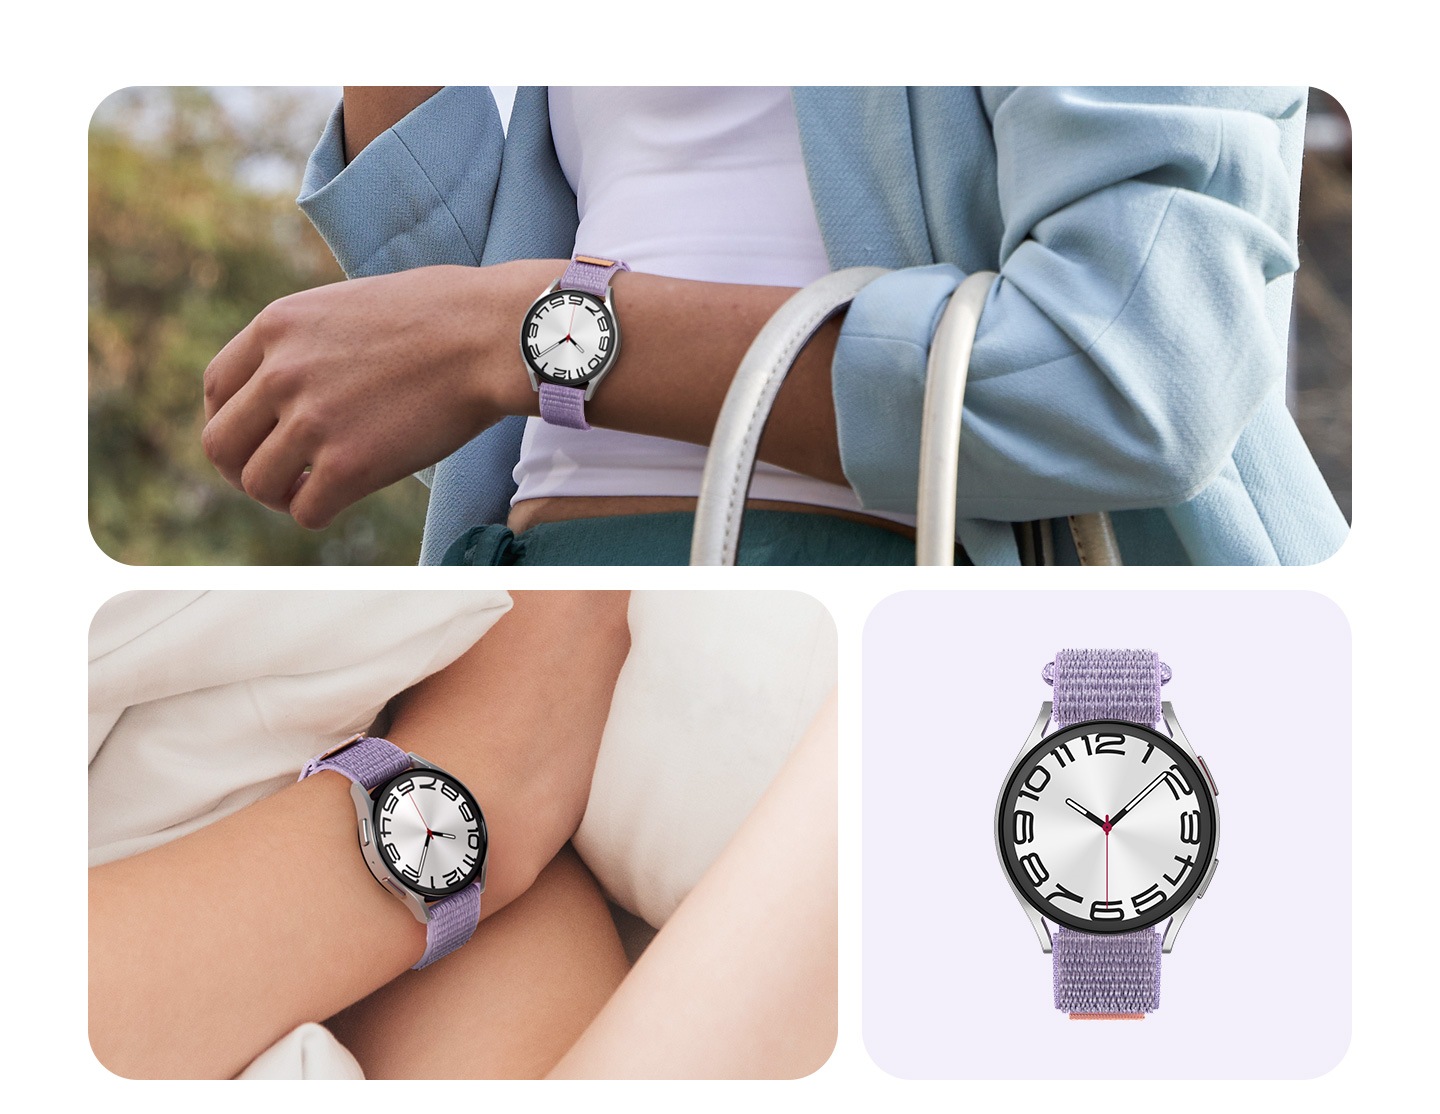 Eine Person in einem lässigen Outfit legt sich eine Galaxy Watch6 mit einem breiten Armband aus Stoff an. Eine andere Person liegt gemütlich im Bett und trägt eine Galaxy Watch 6 mit einem breiten Stoffband.